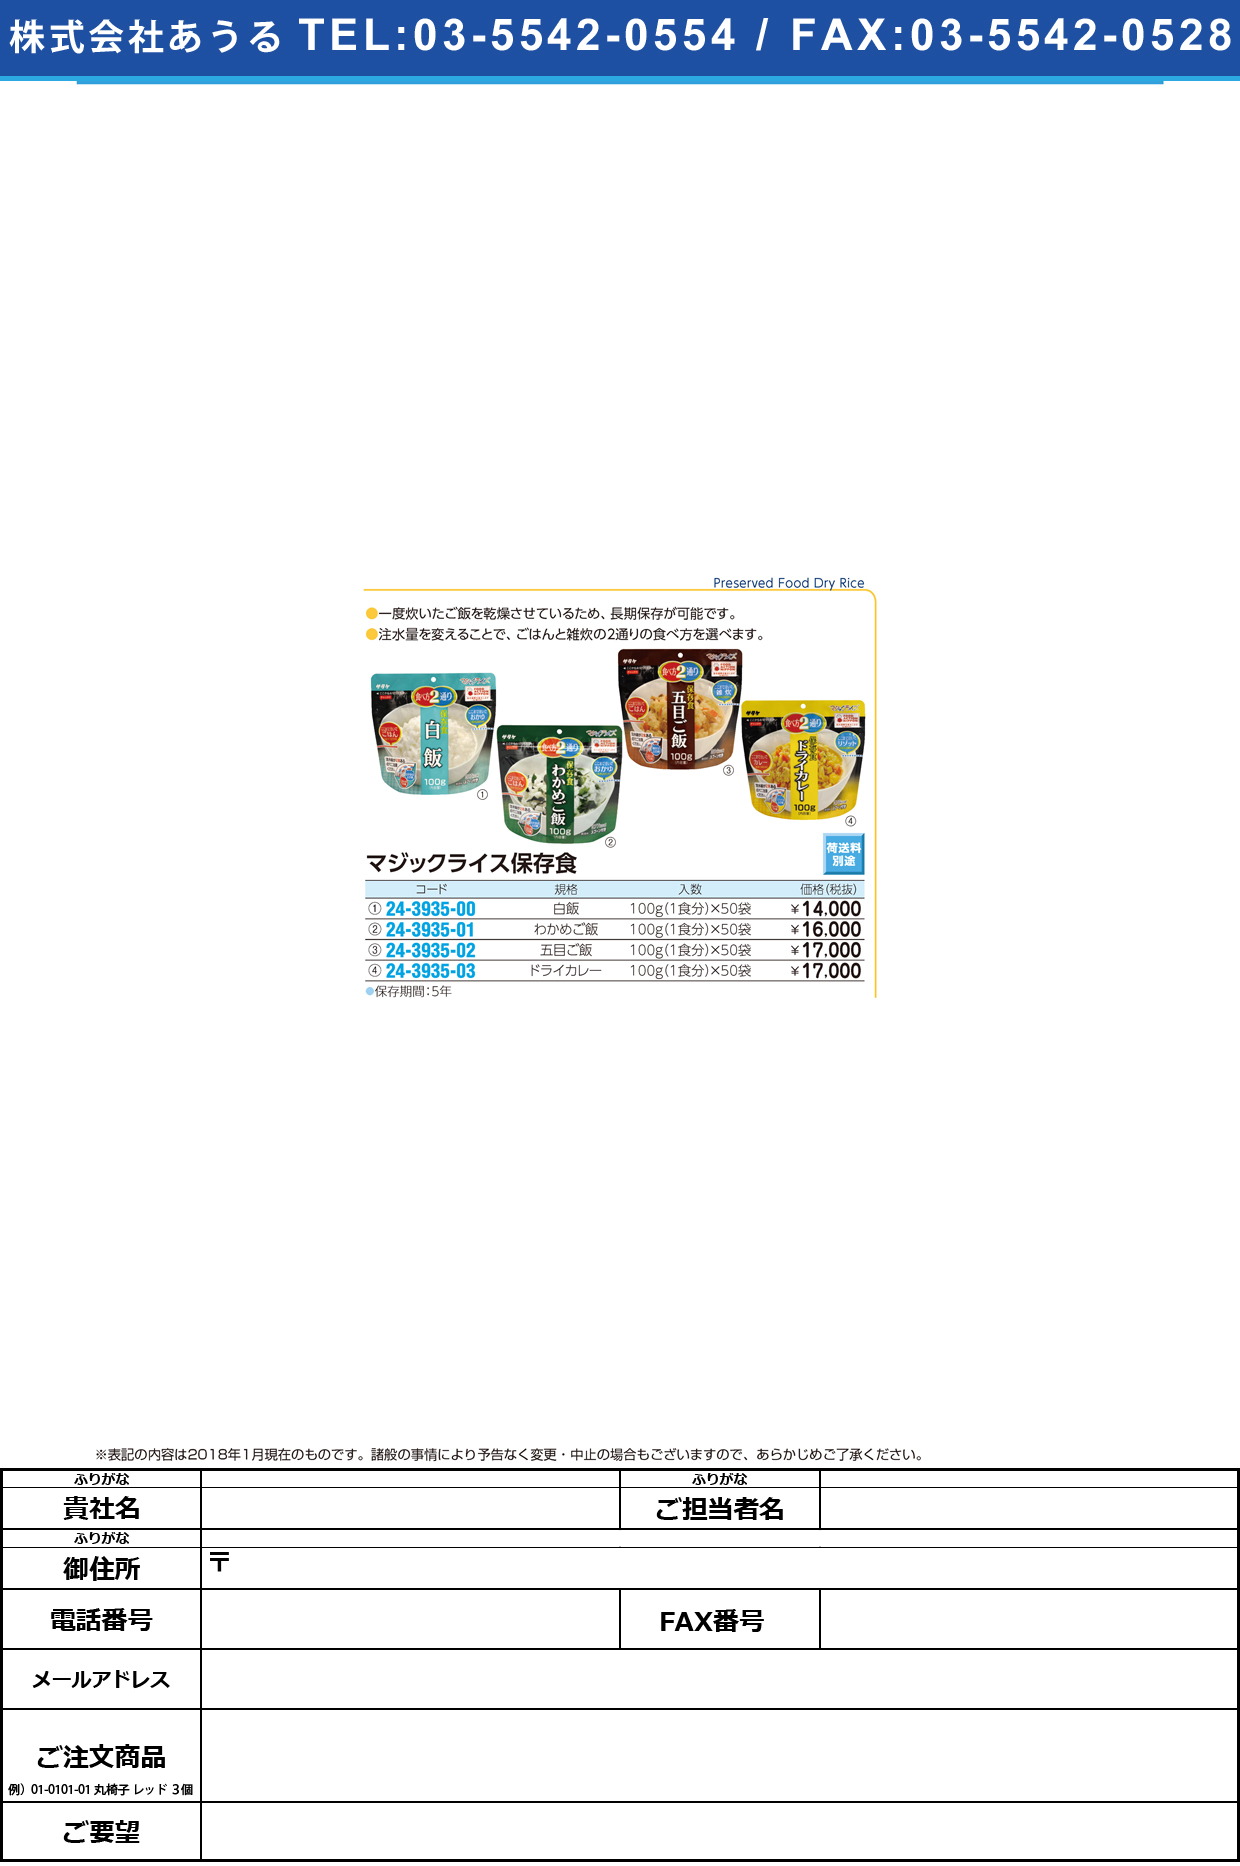 (24-3935-03)マジックライス保存食「ドライカレー」 (100G･1ｼｮｸ)50ﾌｸﾛ ﾏｼﾞｯｸﾗｲｽﾎｿﾞﾝｼｮｸｶﾚｰ【1箱単位】【2018年カタログ商品】